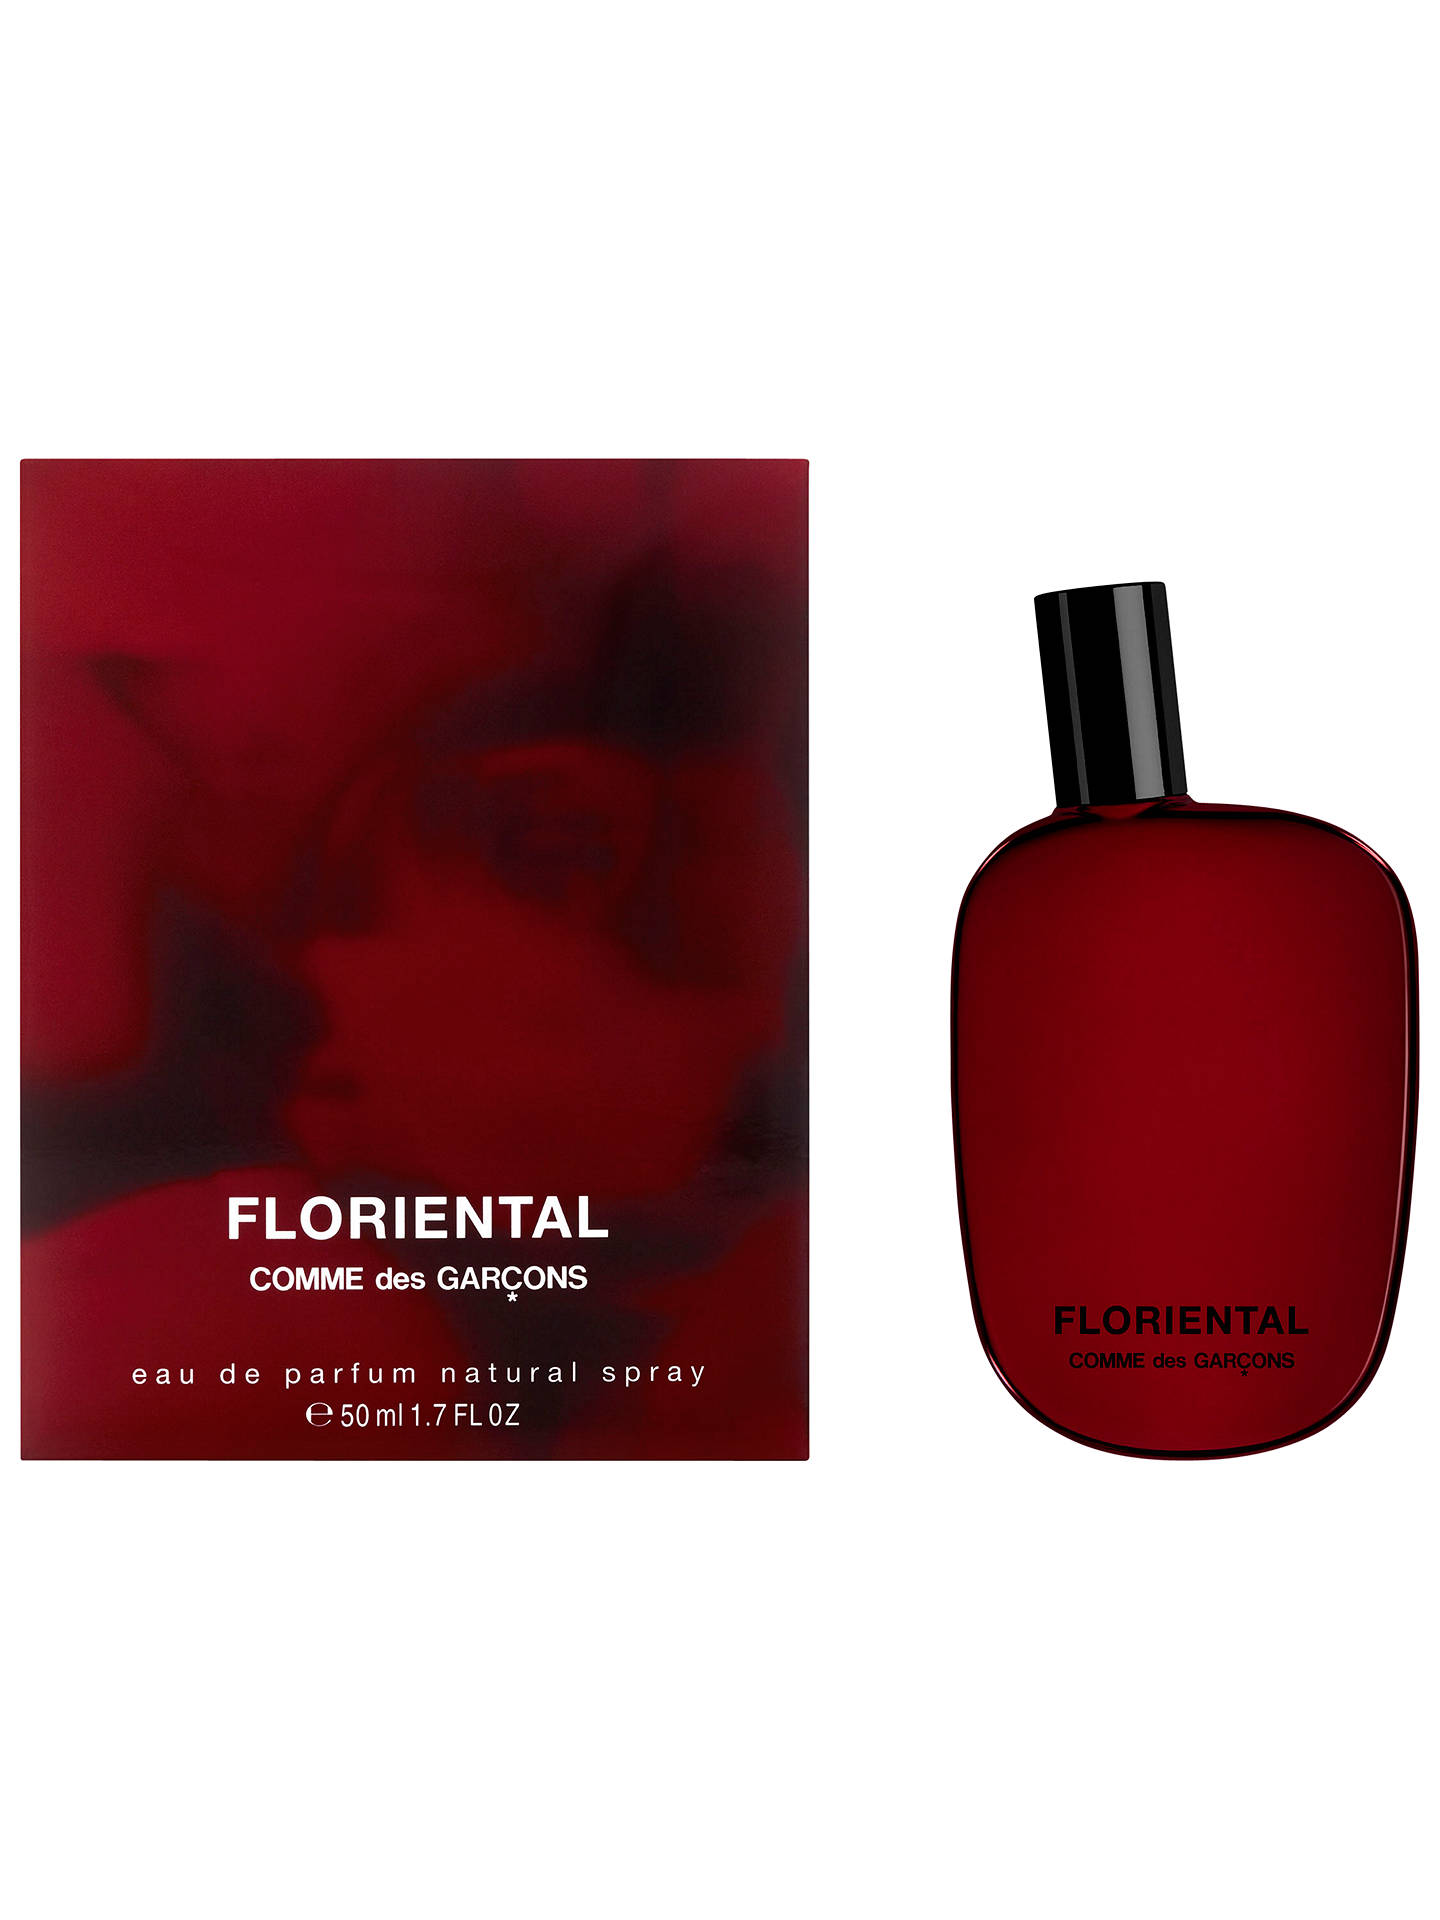 Comme des Garçons Floriental Eau de Parfum at John Lewis & Partners